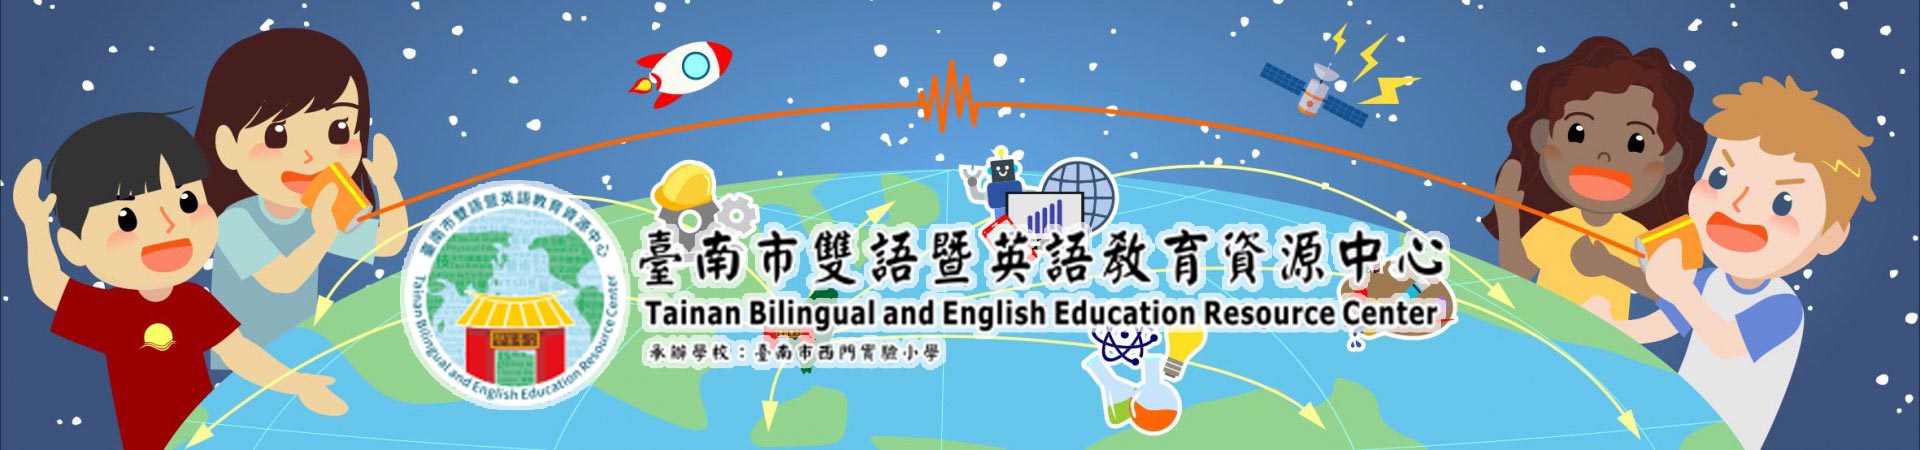 臺南市雙語暨英語教育資源中心